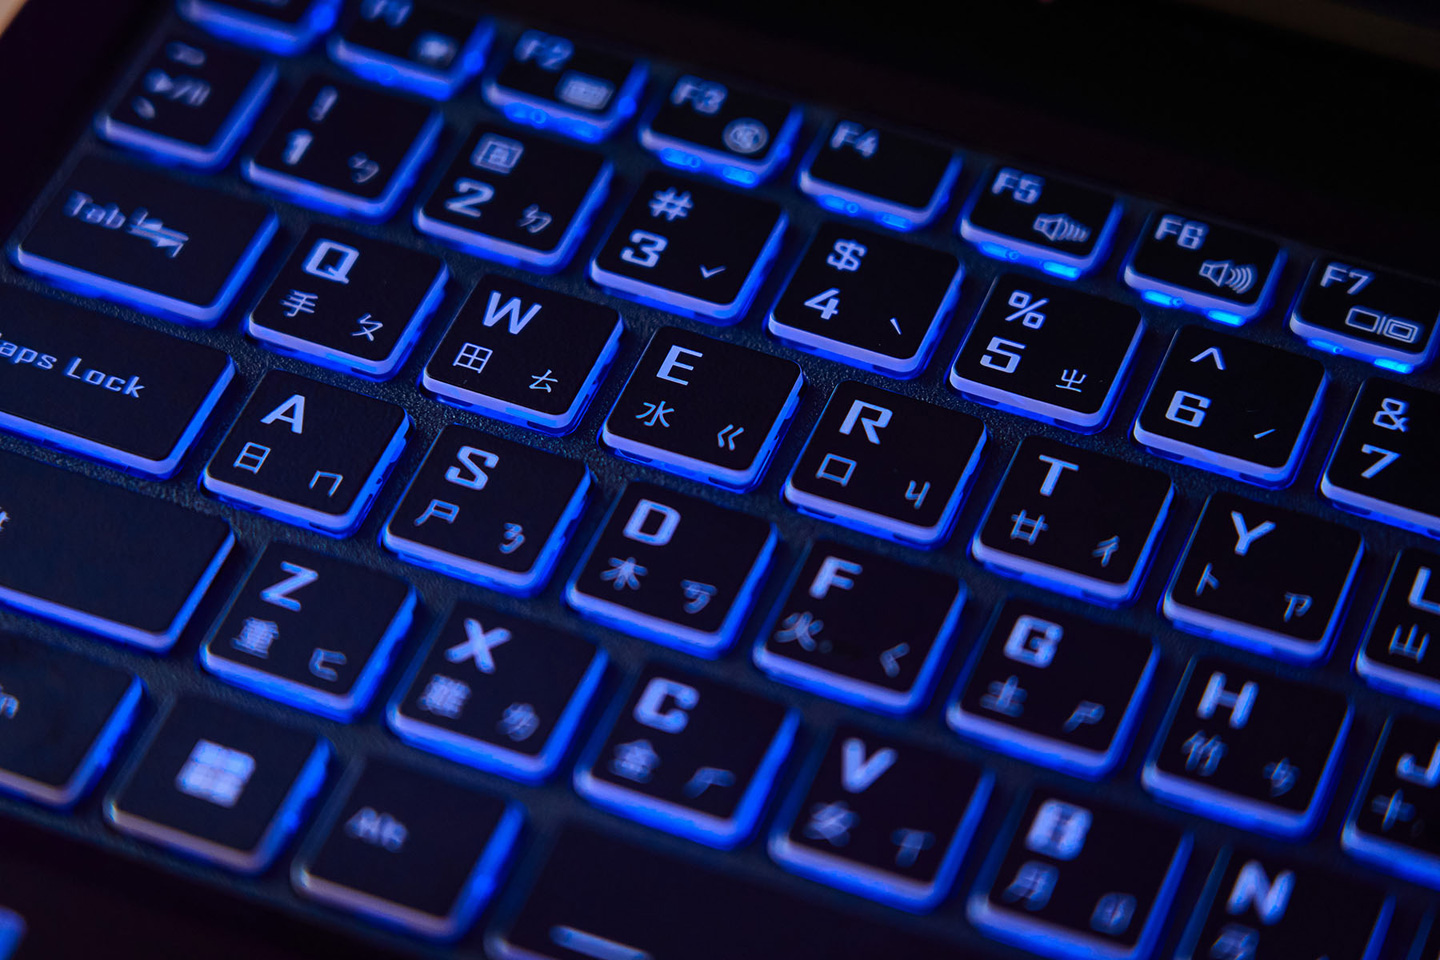 鍵盤為孤島式設計，鍵帽邊緣設計為半透明，更能顯現出 RGB 背光燈效。